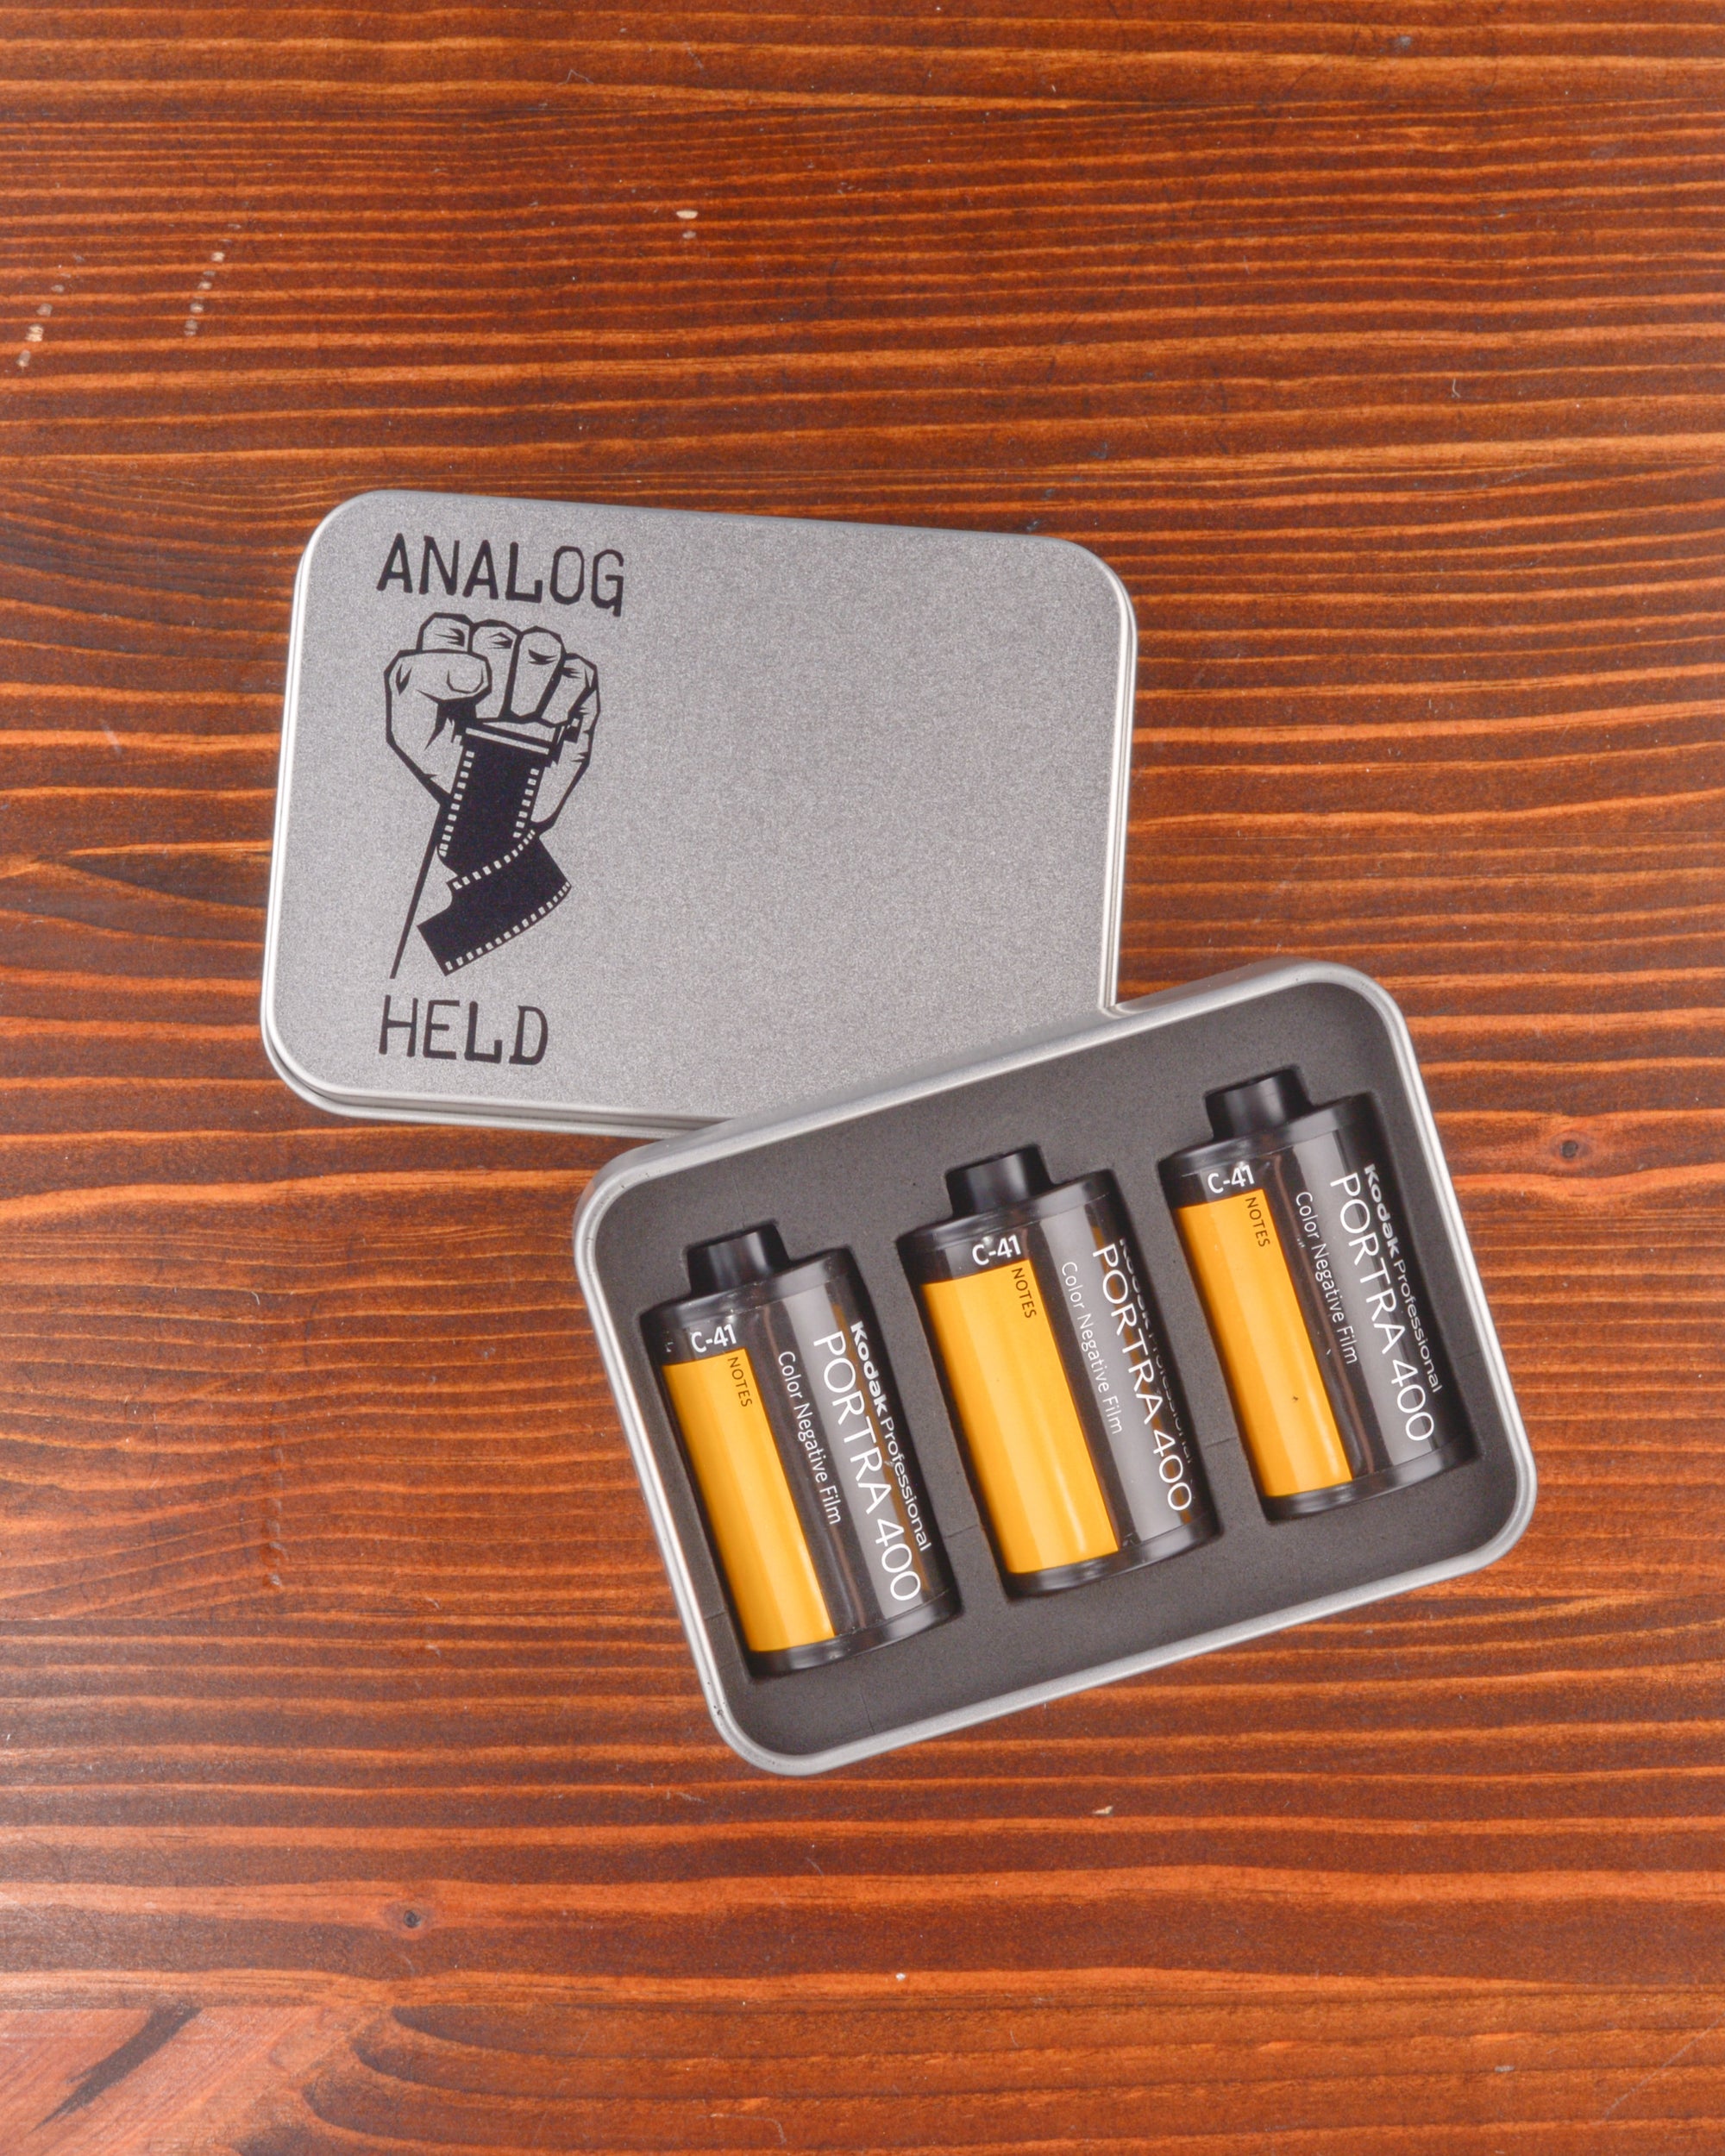 AnalogHeld 35mm Film Case